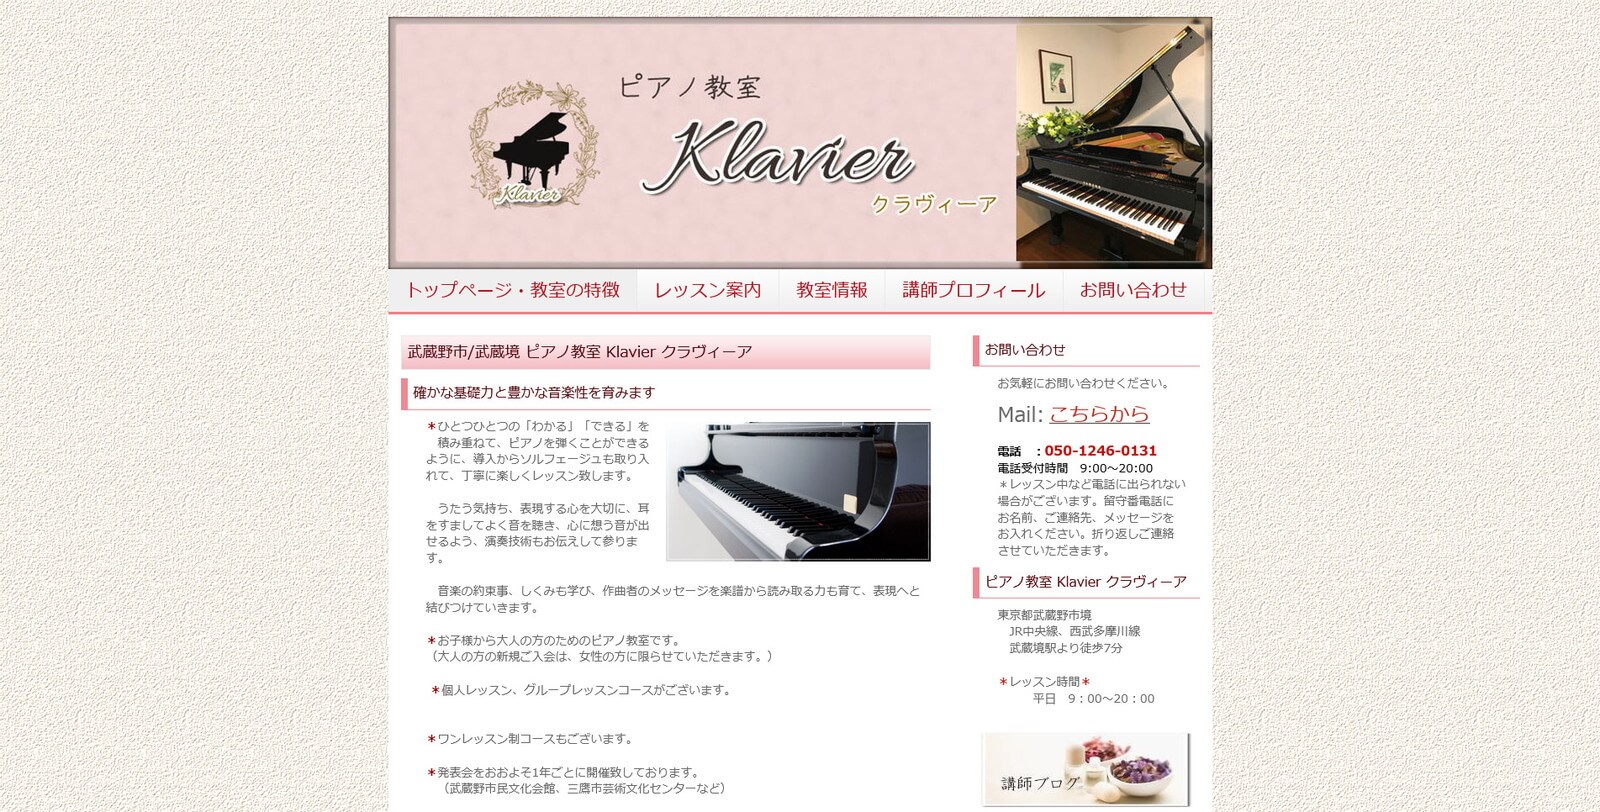  ピアノ教室 Klavier クラヴィーア 